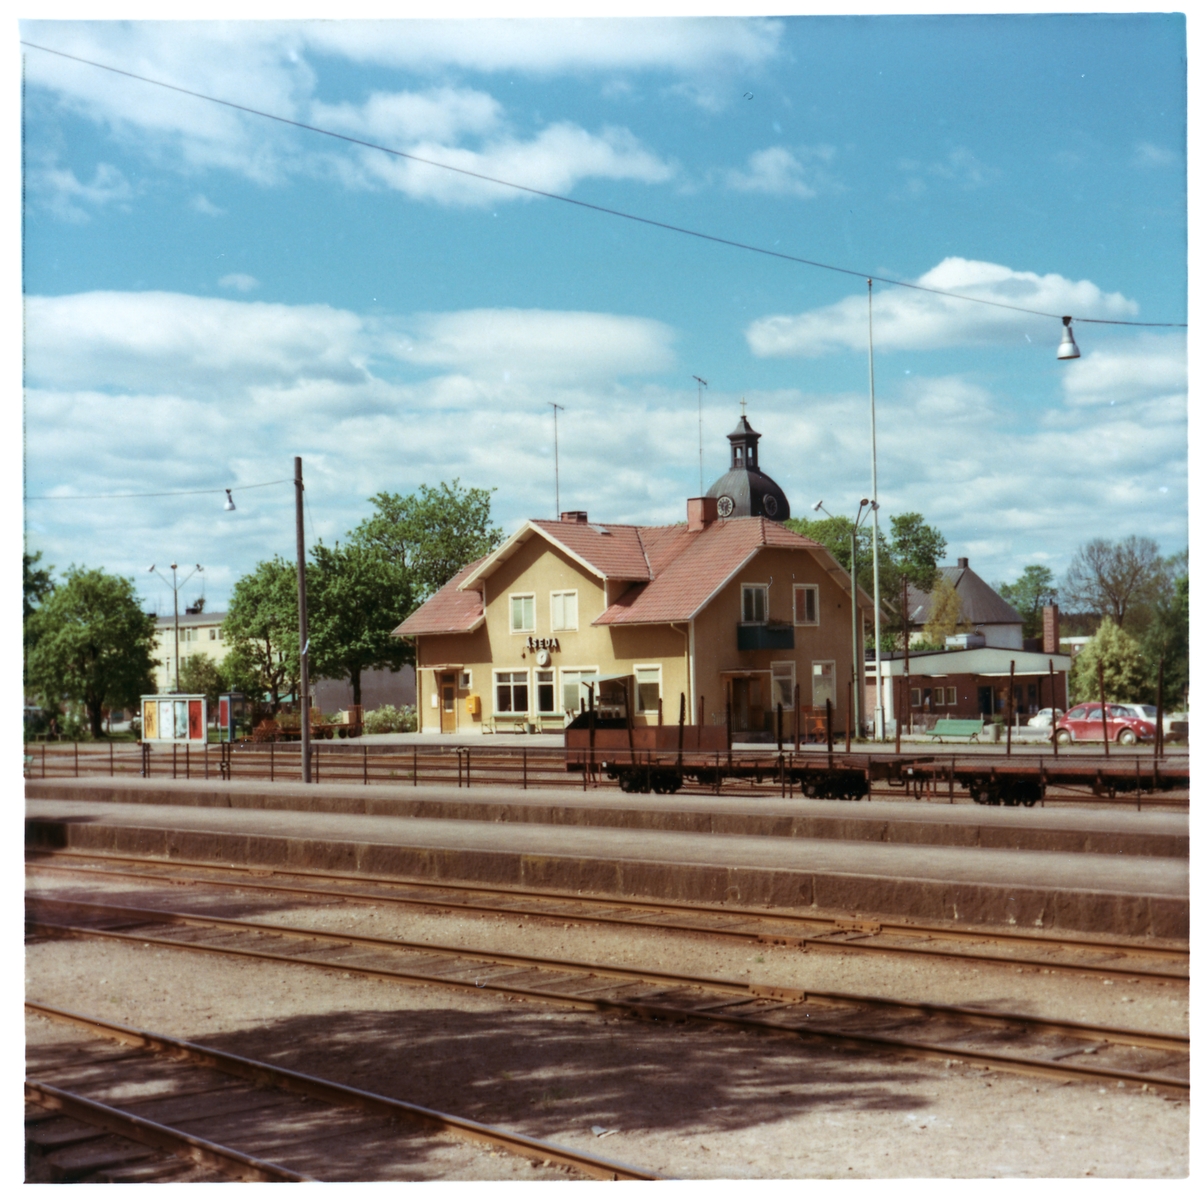 Namnet var tidigare ÅSHEDA. Station anlagd 1902 av WWJ. 1914 tillkom SäNJ. En- och enhalvvånings stationshus i trä.
WWJ , Växjö - Virserum Järnväg
SäNJ , Sävsjöström - Nässjö Järnväg